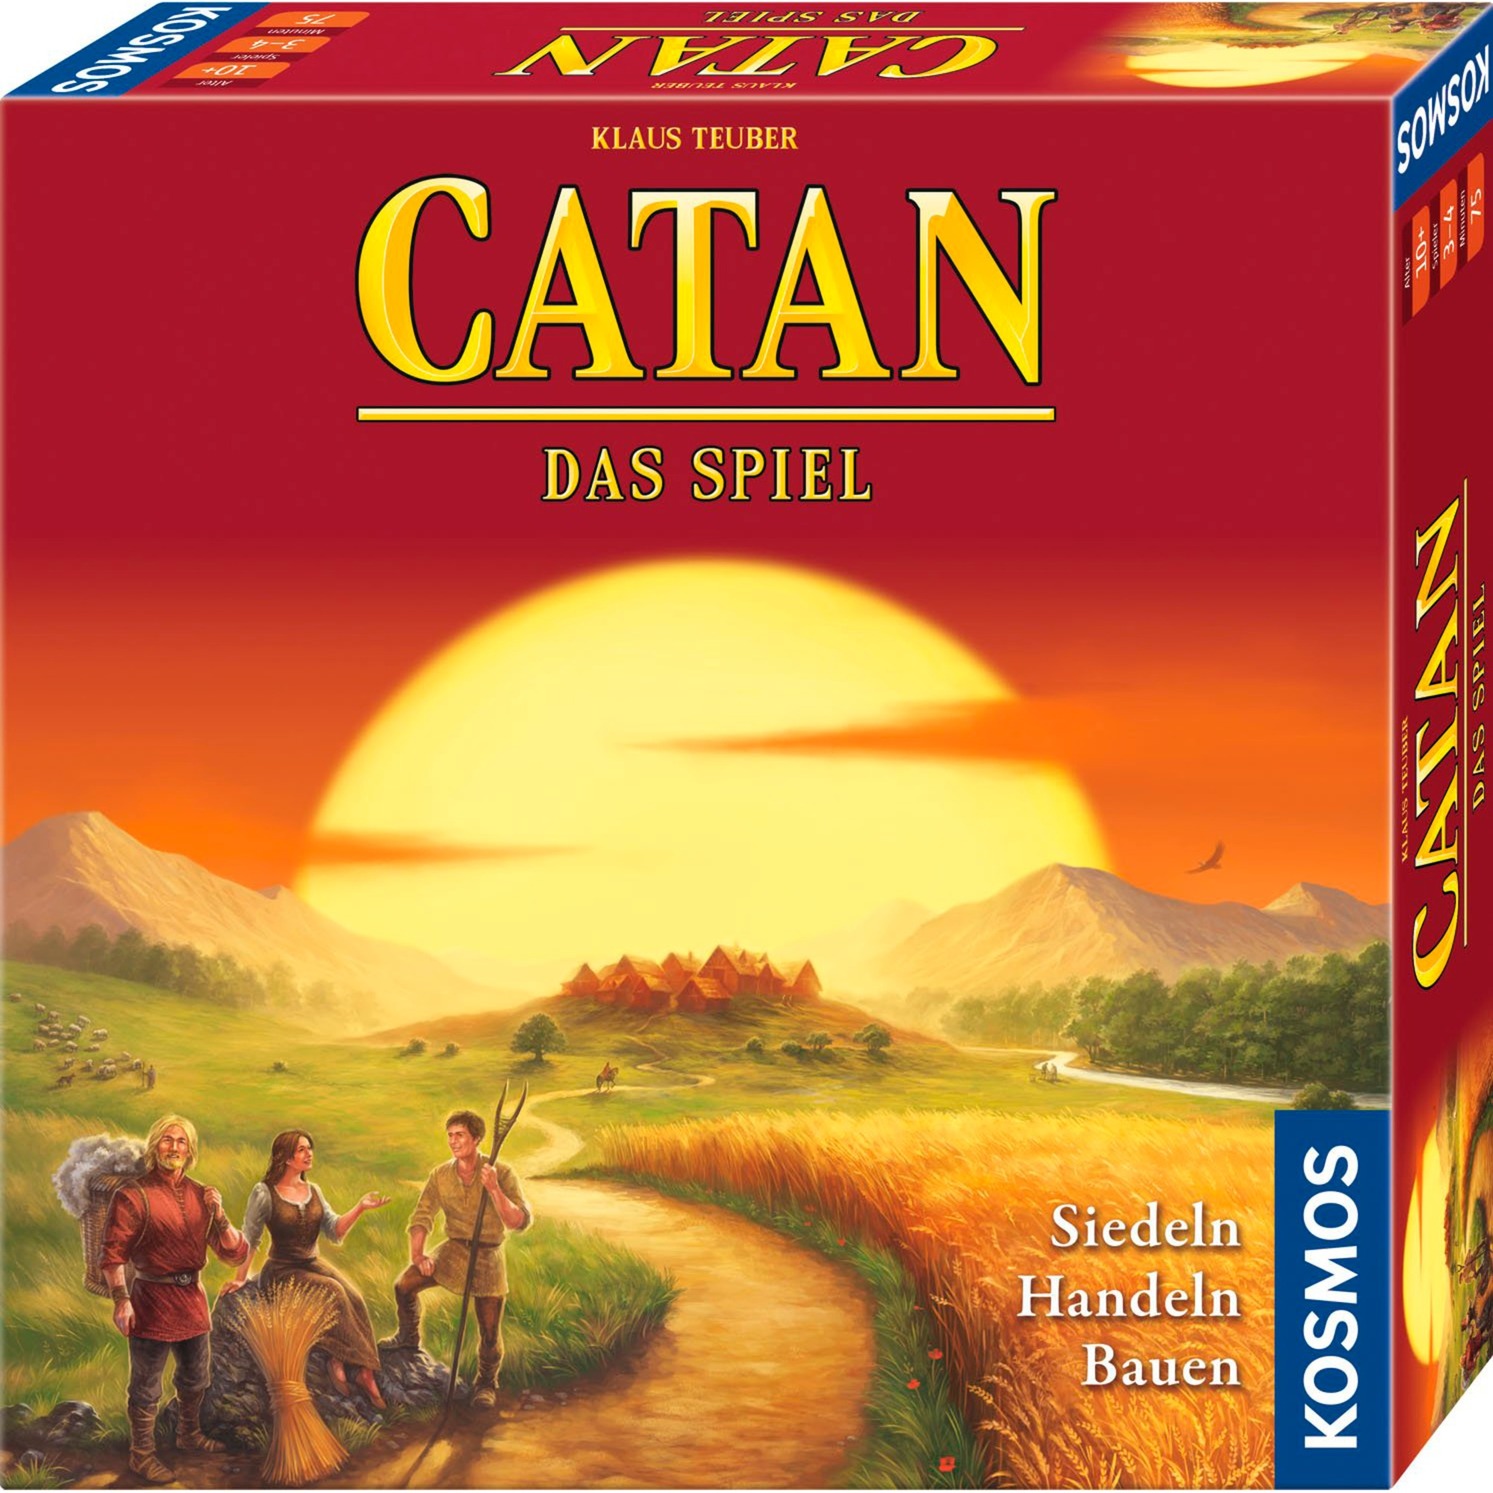 CATAN - Das Spiel, Brettspiel von Kosmos